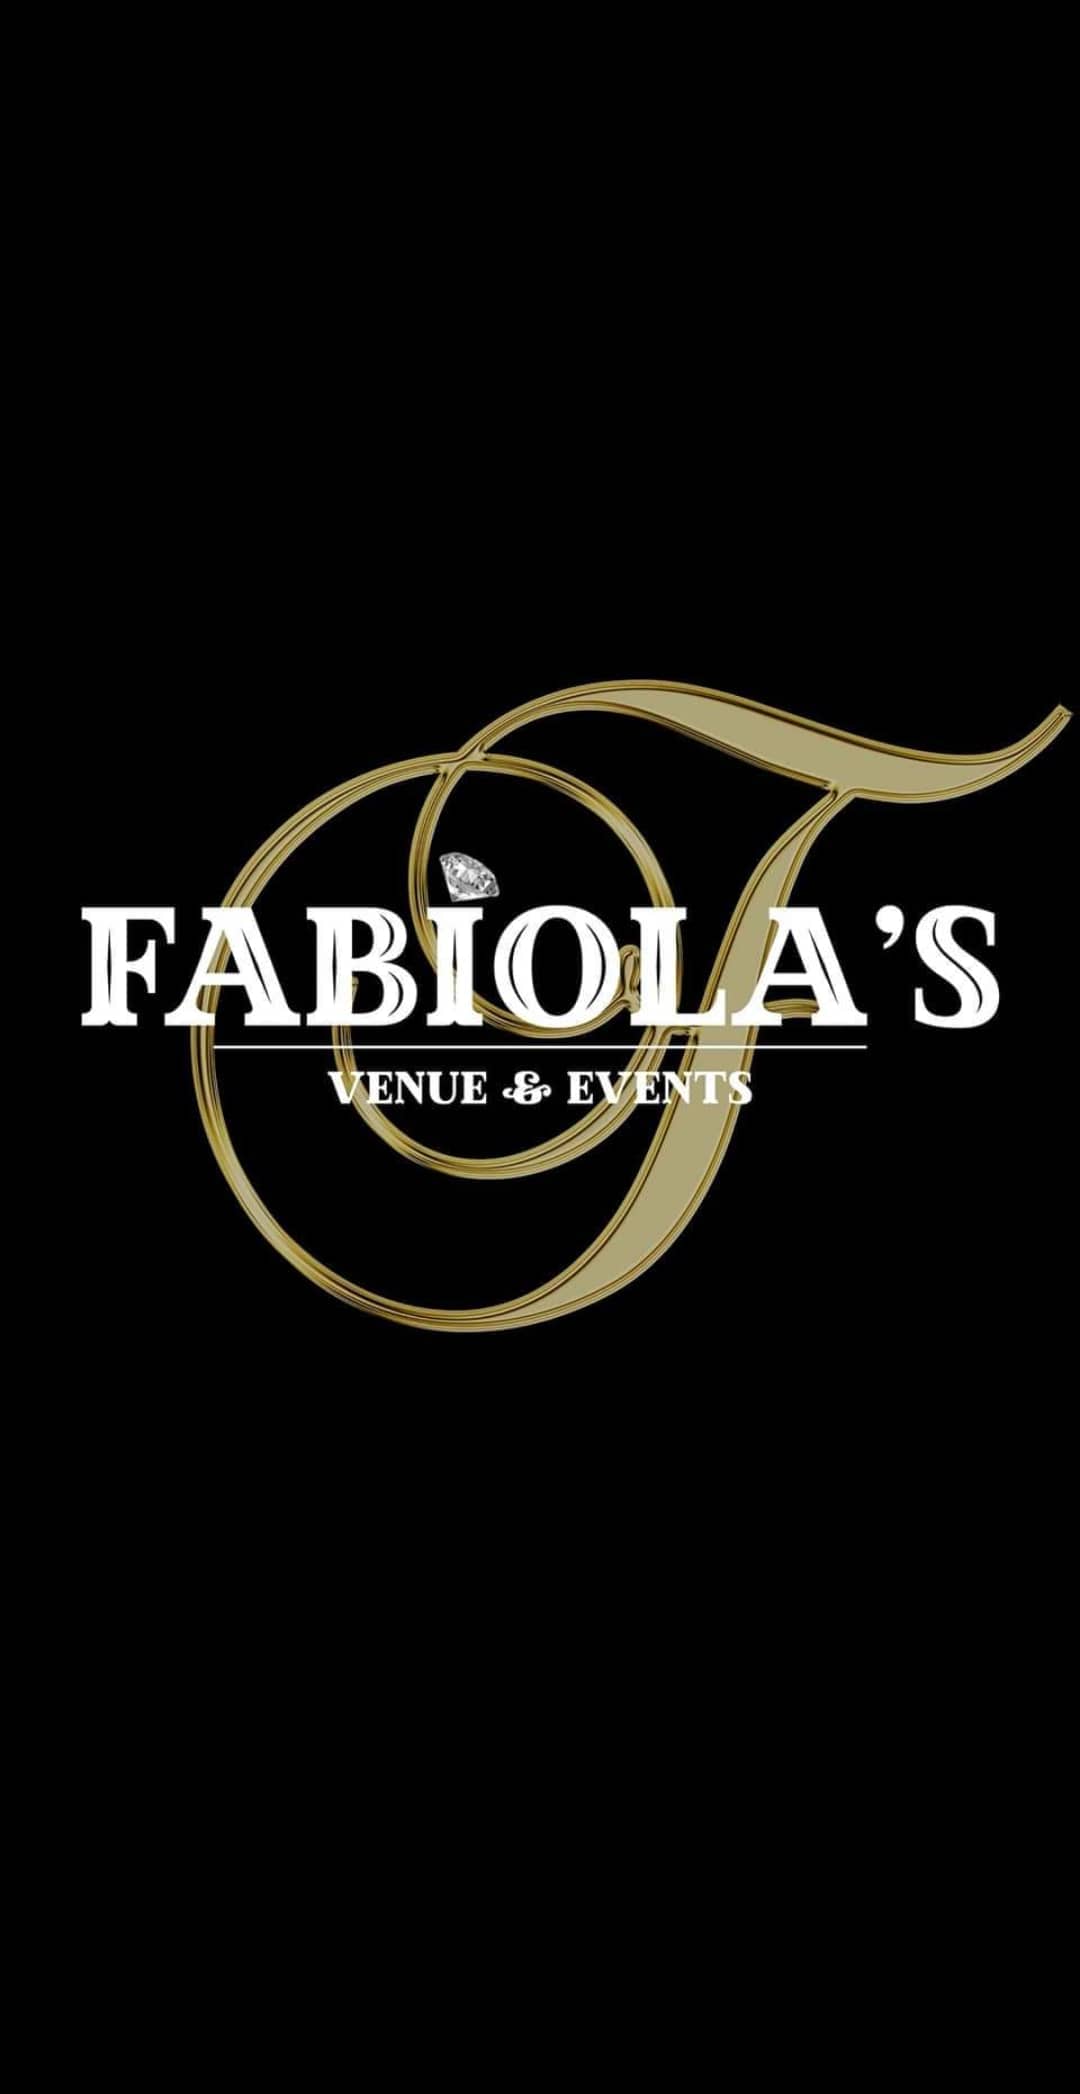 Fabiola's Venue